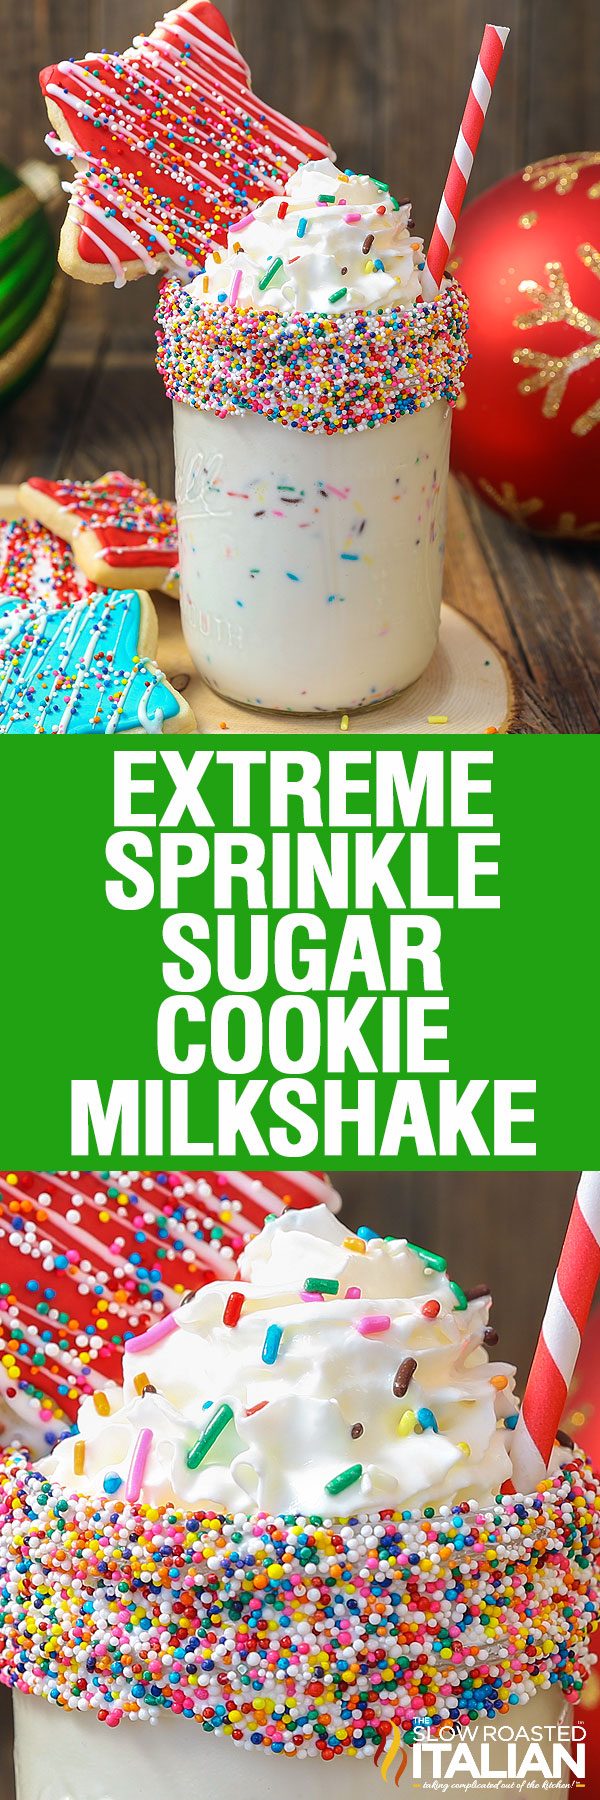 extreme-sprinkle-sugar-cookie-milkshake-pin-2613997